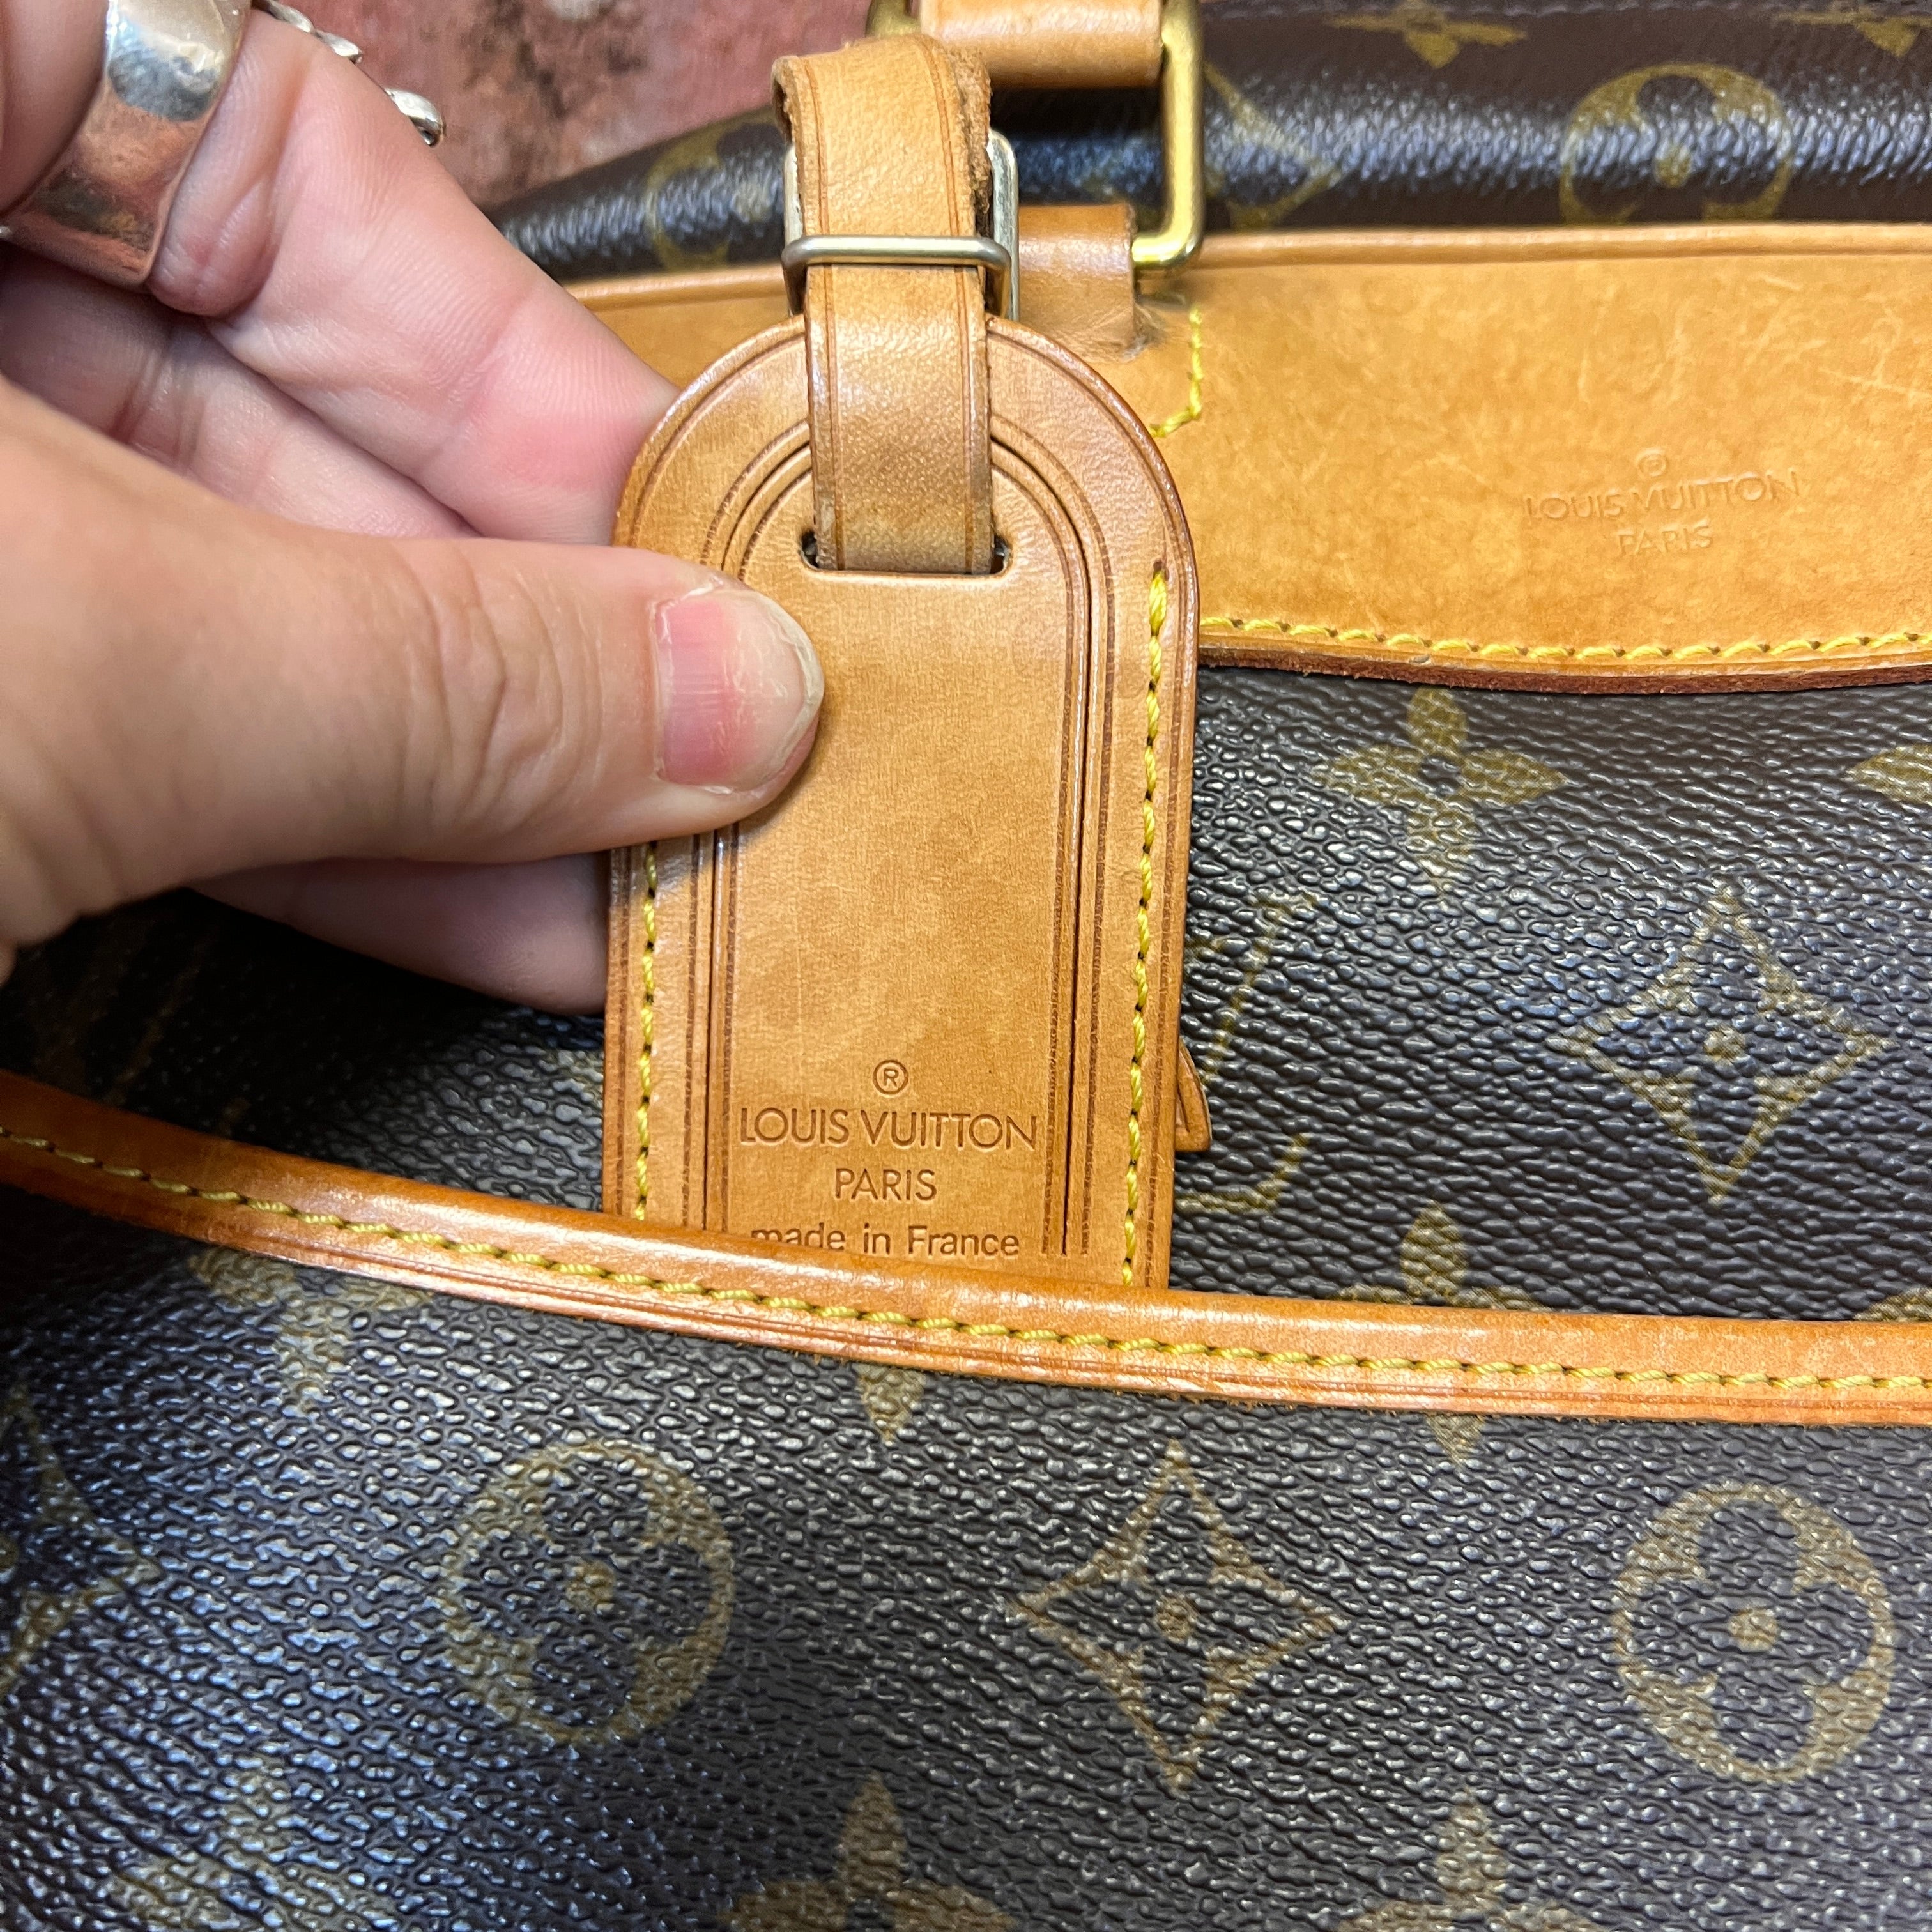 LOUIS VUITTON vintage briefcase bag – Wellington Hunters and